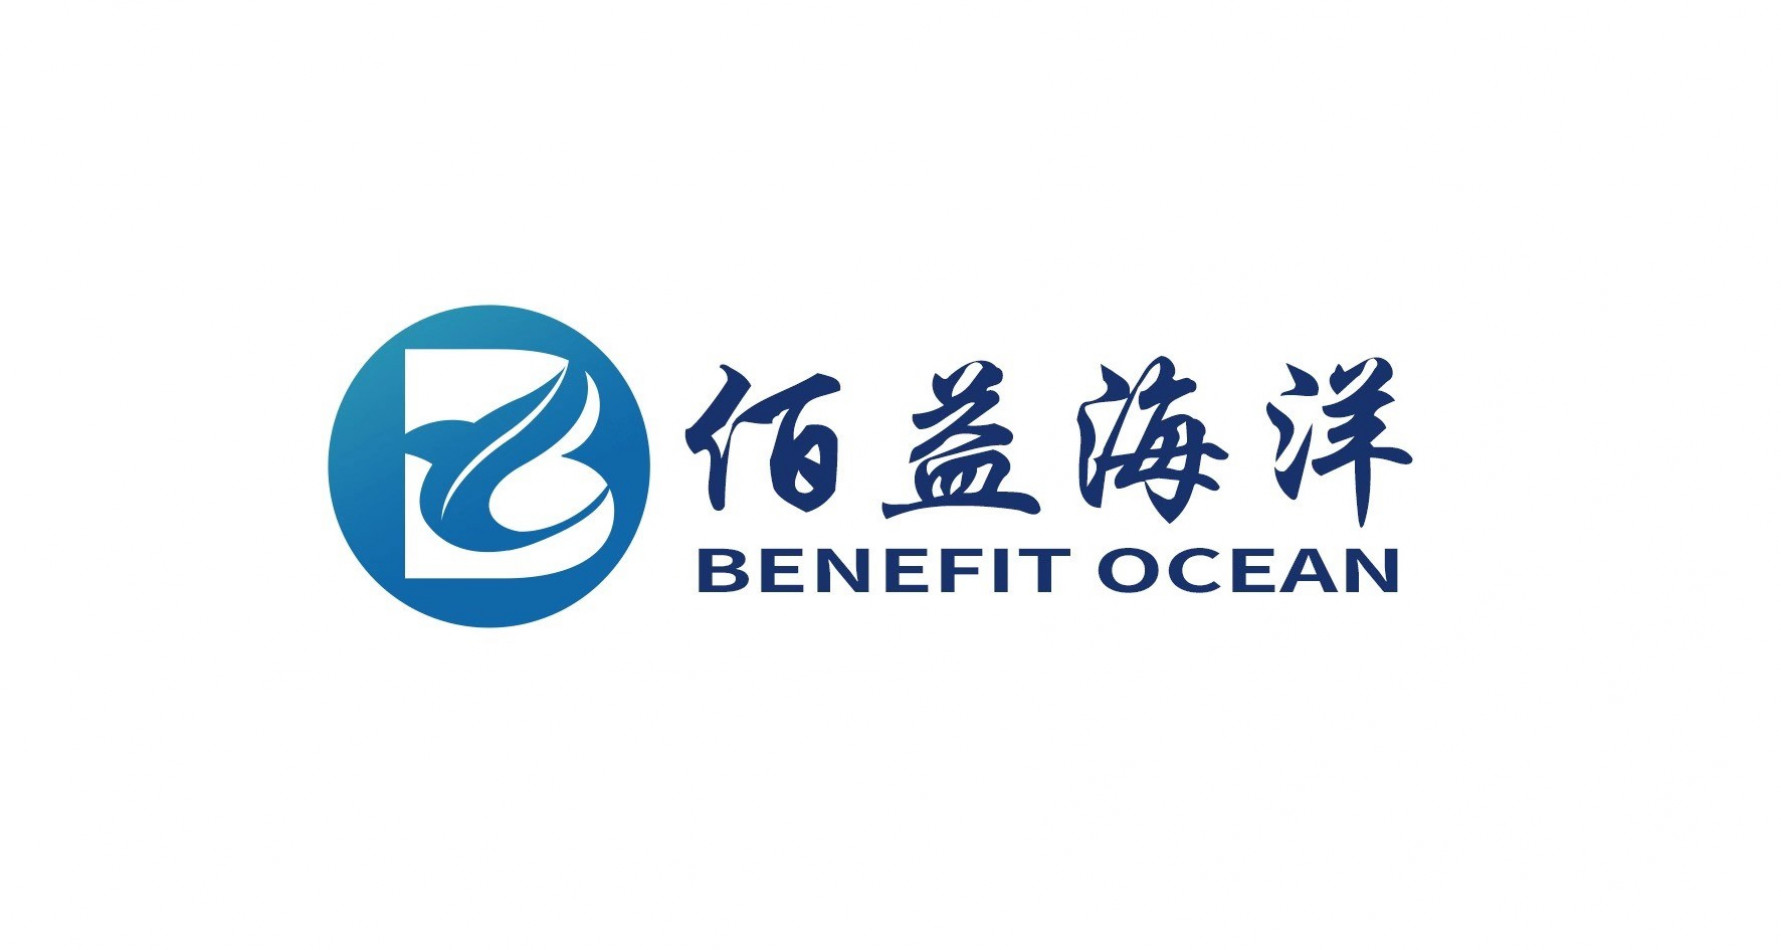 JIANGSU BENEFIT OCEAN TECHNOLOGY CO., LTD.